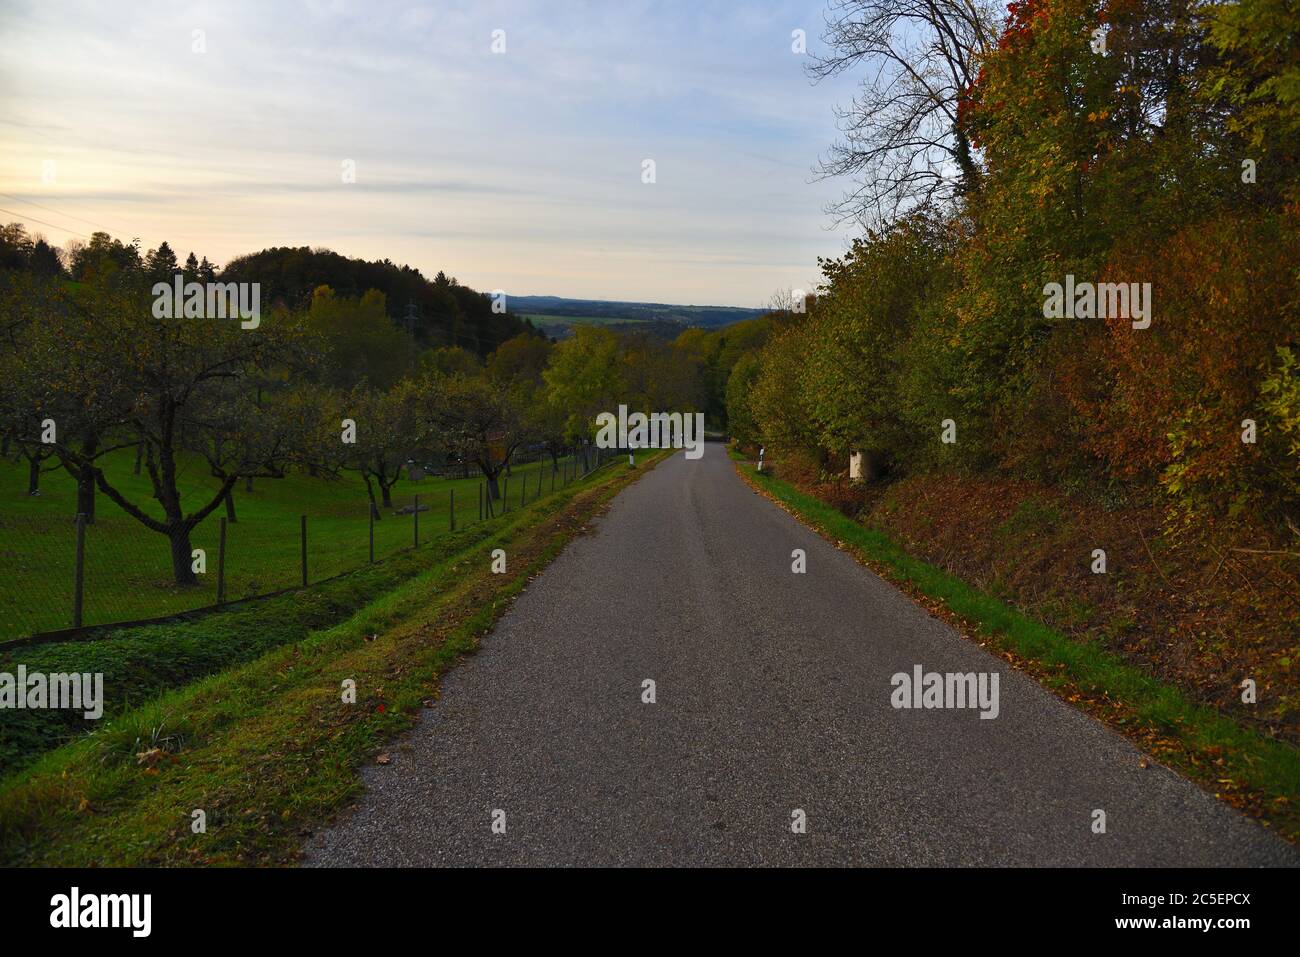 Marche le long d'un chemin dans les arbres de Meadows et d'automne, Silhouettes de colline avec les arbres de forêt à l'horizon, Alb de Souabe, Allemagne, Europe, soirée, Voyage. Banque D'Images